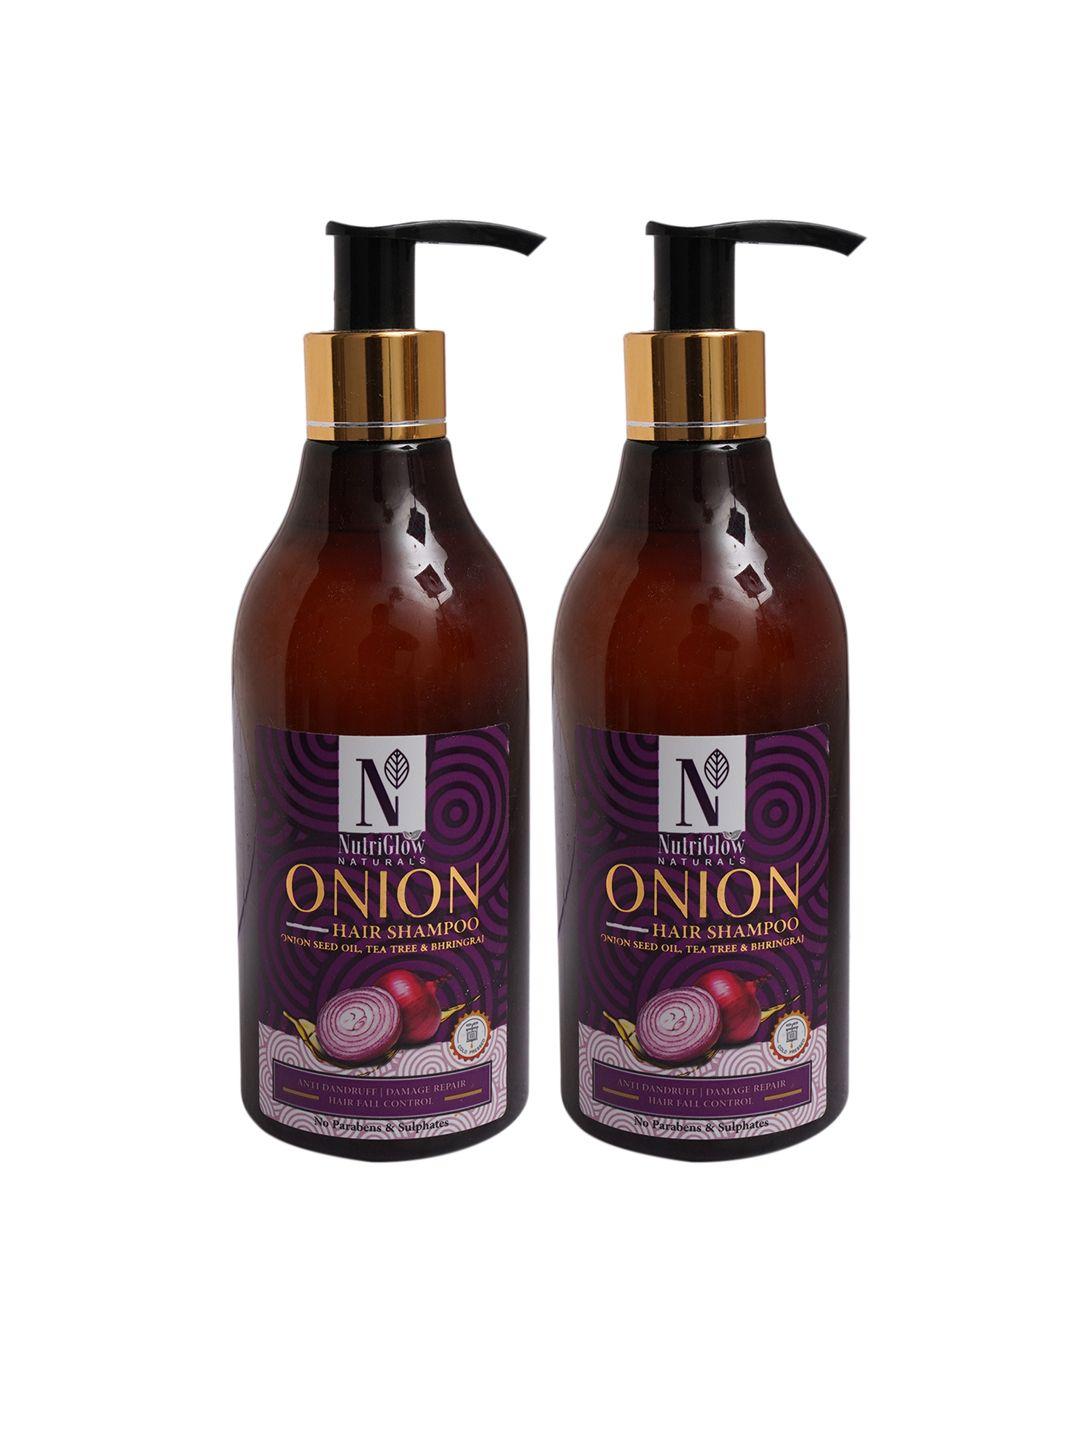 nutriglow naturals set of 2 onion dry damage repair hair shampoo 300 ml each